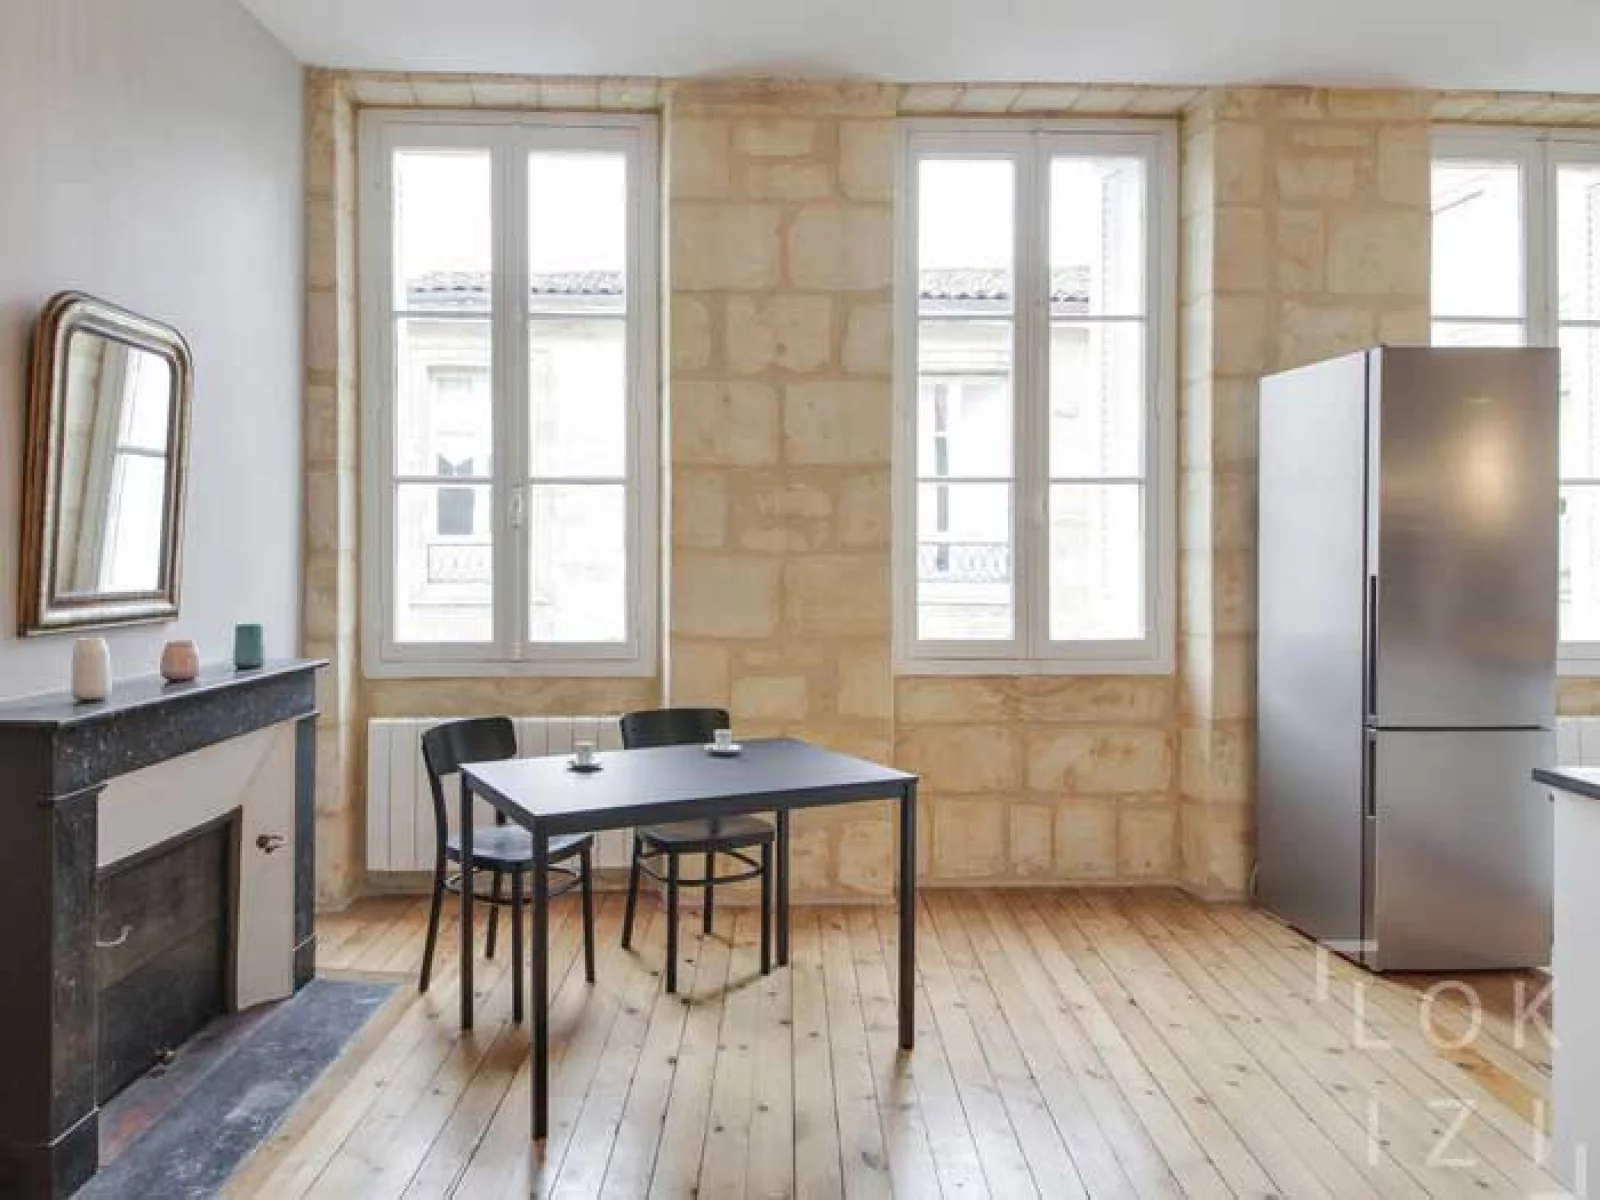 Location appartement meublé 2 pièces 55m² (Bordeaux - St Michel)